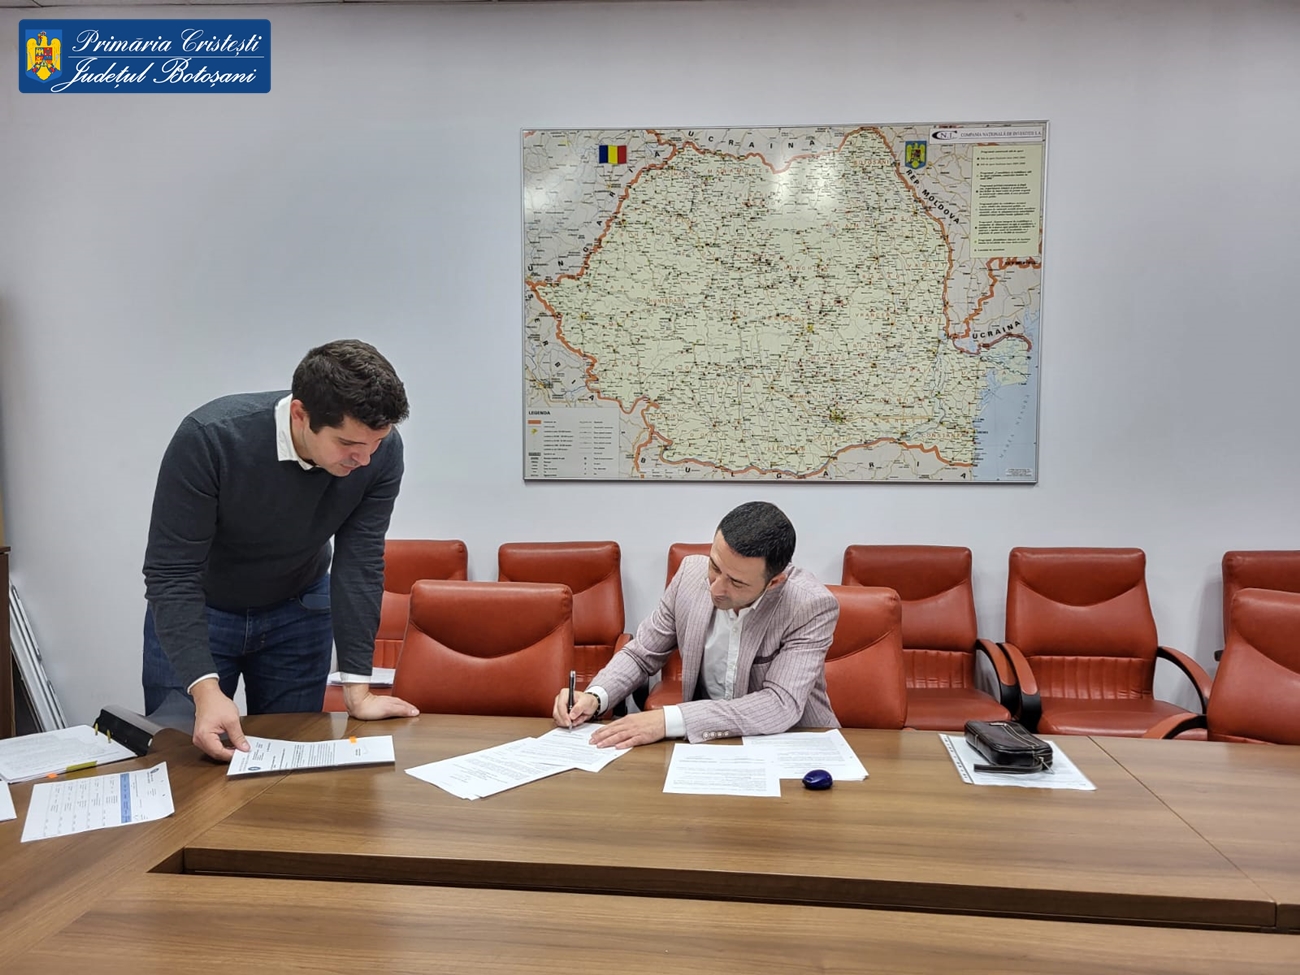 S-a semnat contractul pentru renovarea sediului Primariei Cristesti!